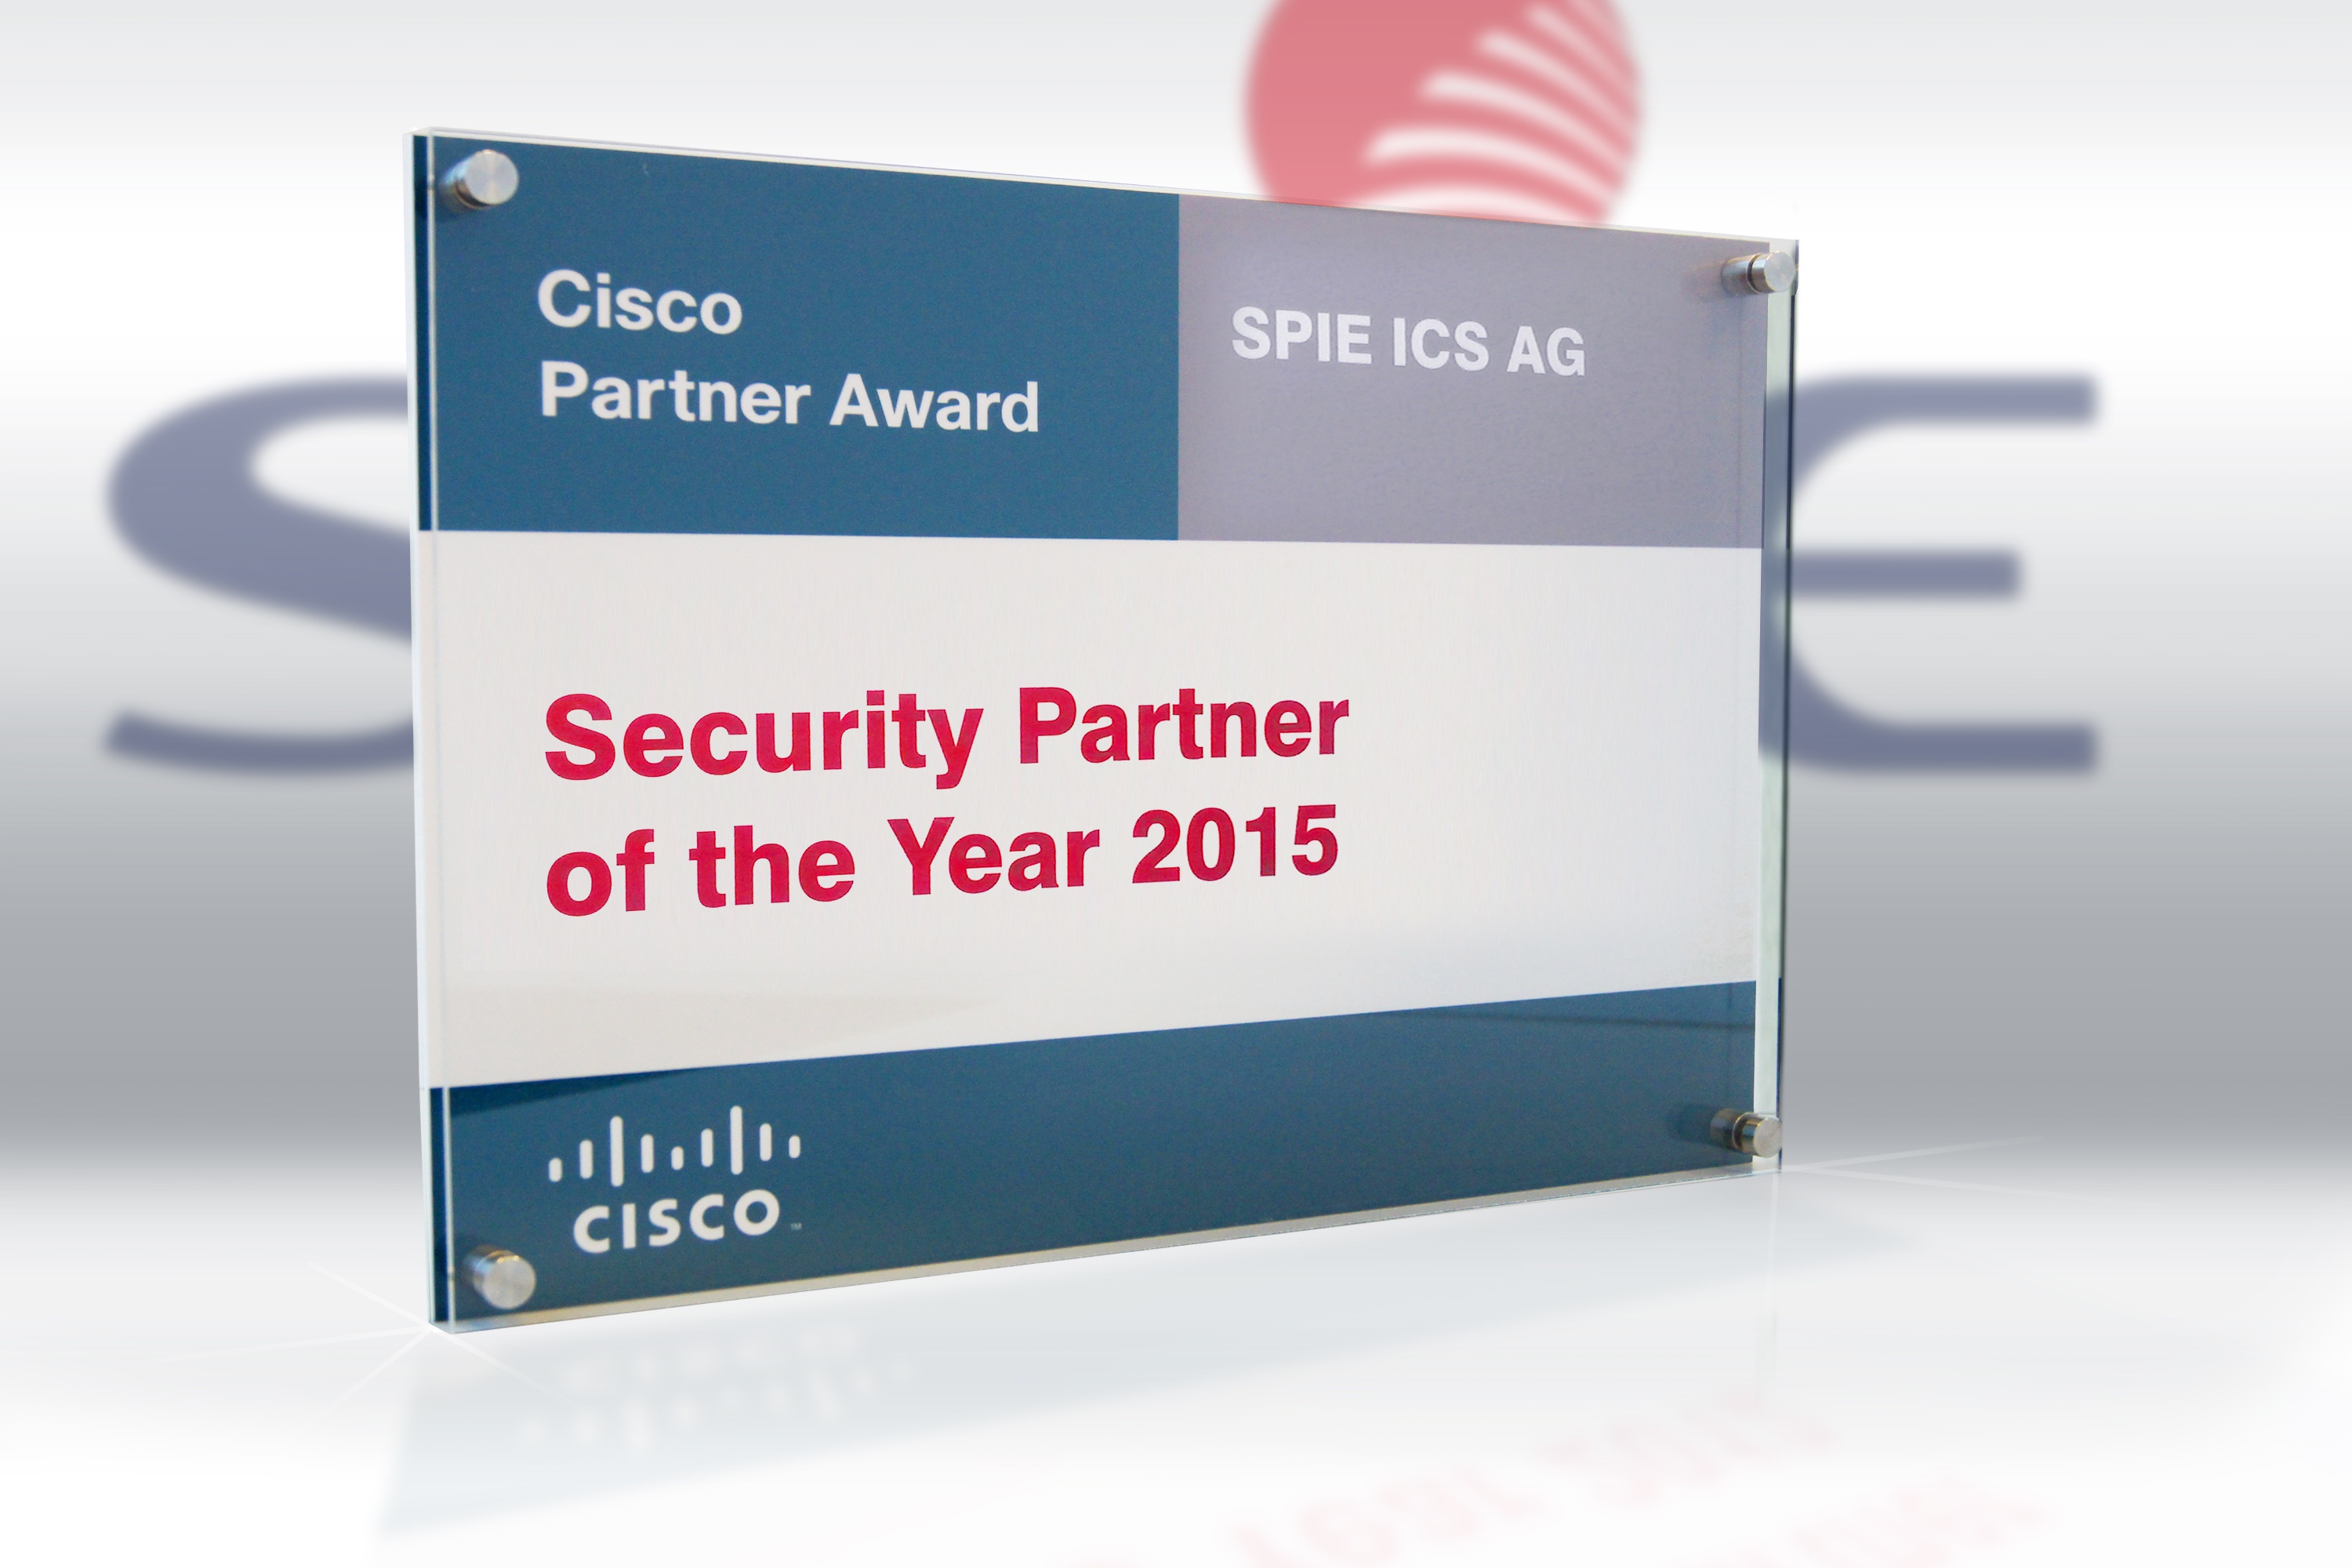 CISCO SUISSE ATTRIBUE LE TITRE DE «SECURITY PARTNER OF THE YEAR 2015» À SPIE ICS